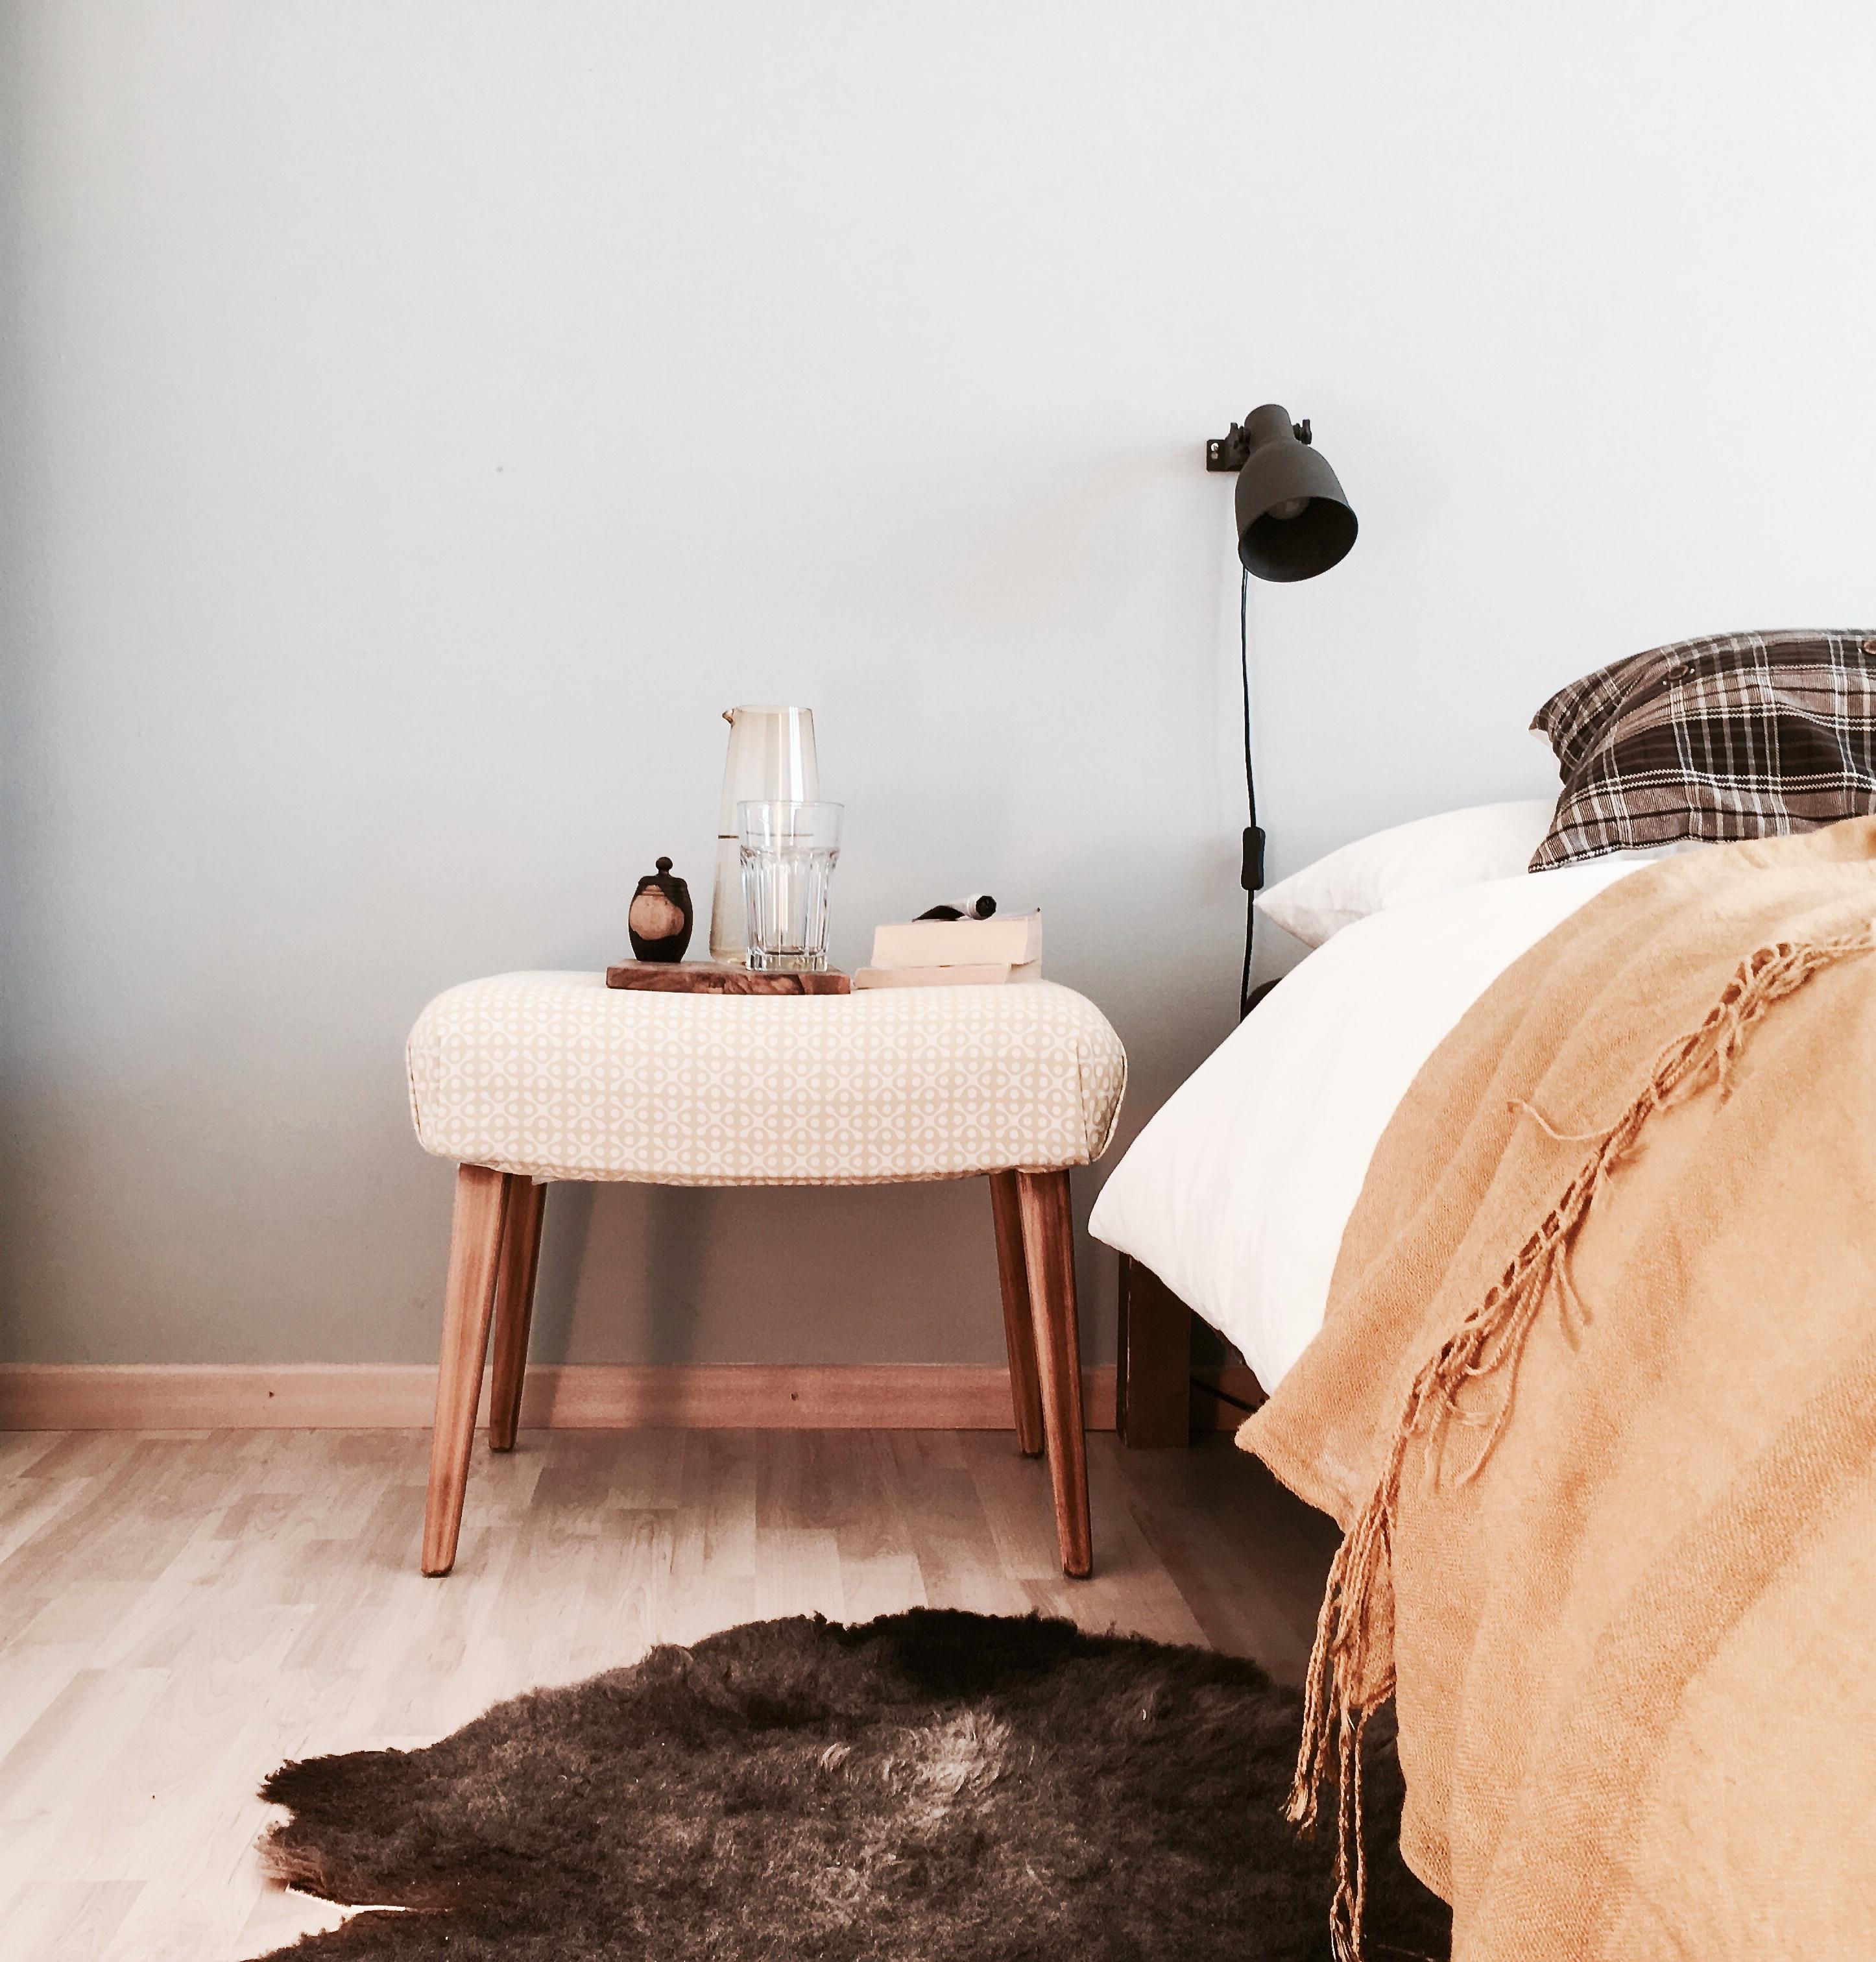 Schlafzimmer in herbstlichen Farben  #vondirinspiriert #schlafzimmer #herbstfarben #grau #senfgelb #